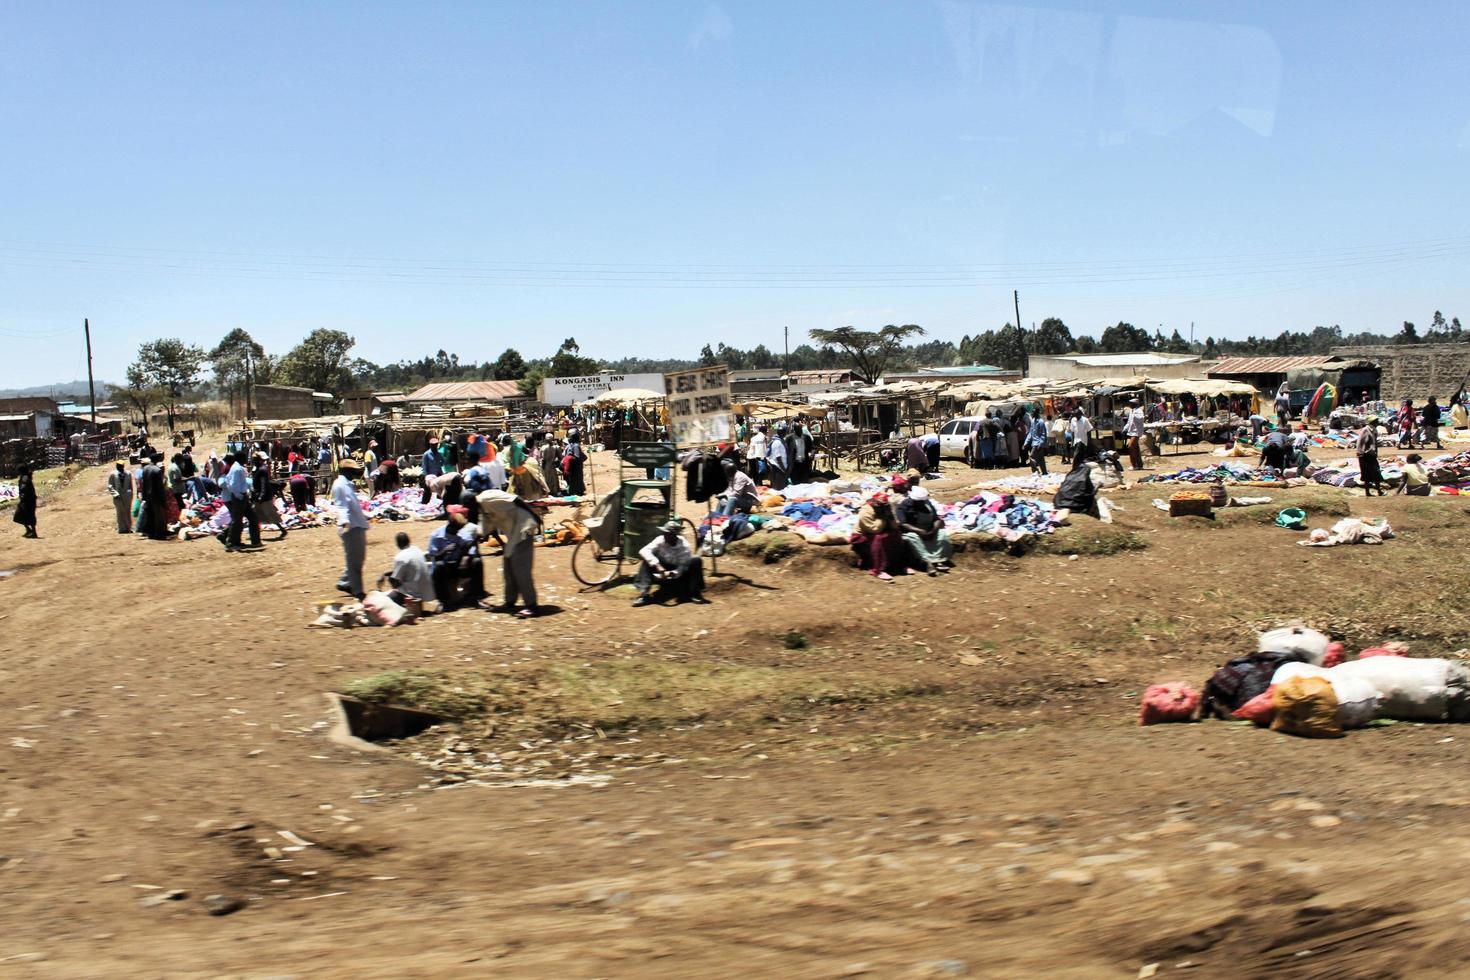 kimilili i kenya i februari 2011. en se av människor försäljning Produkter i kenya foto